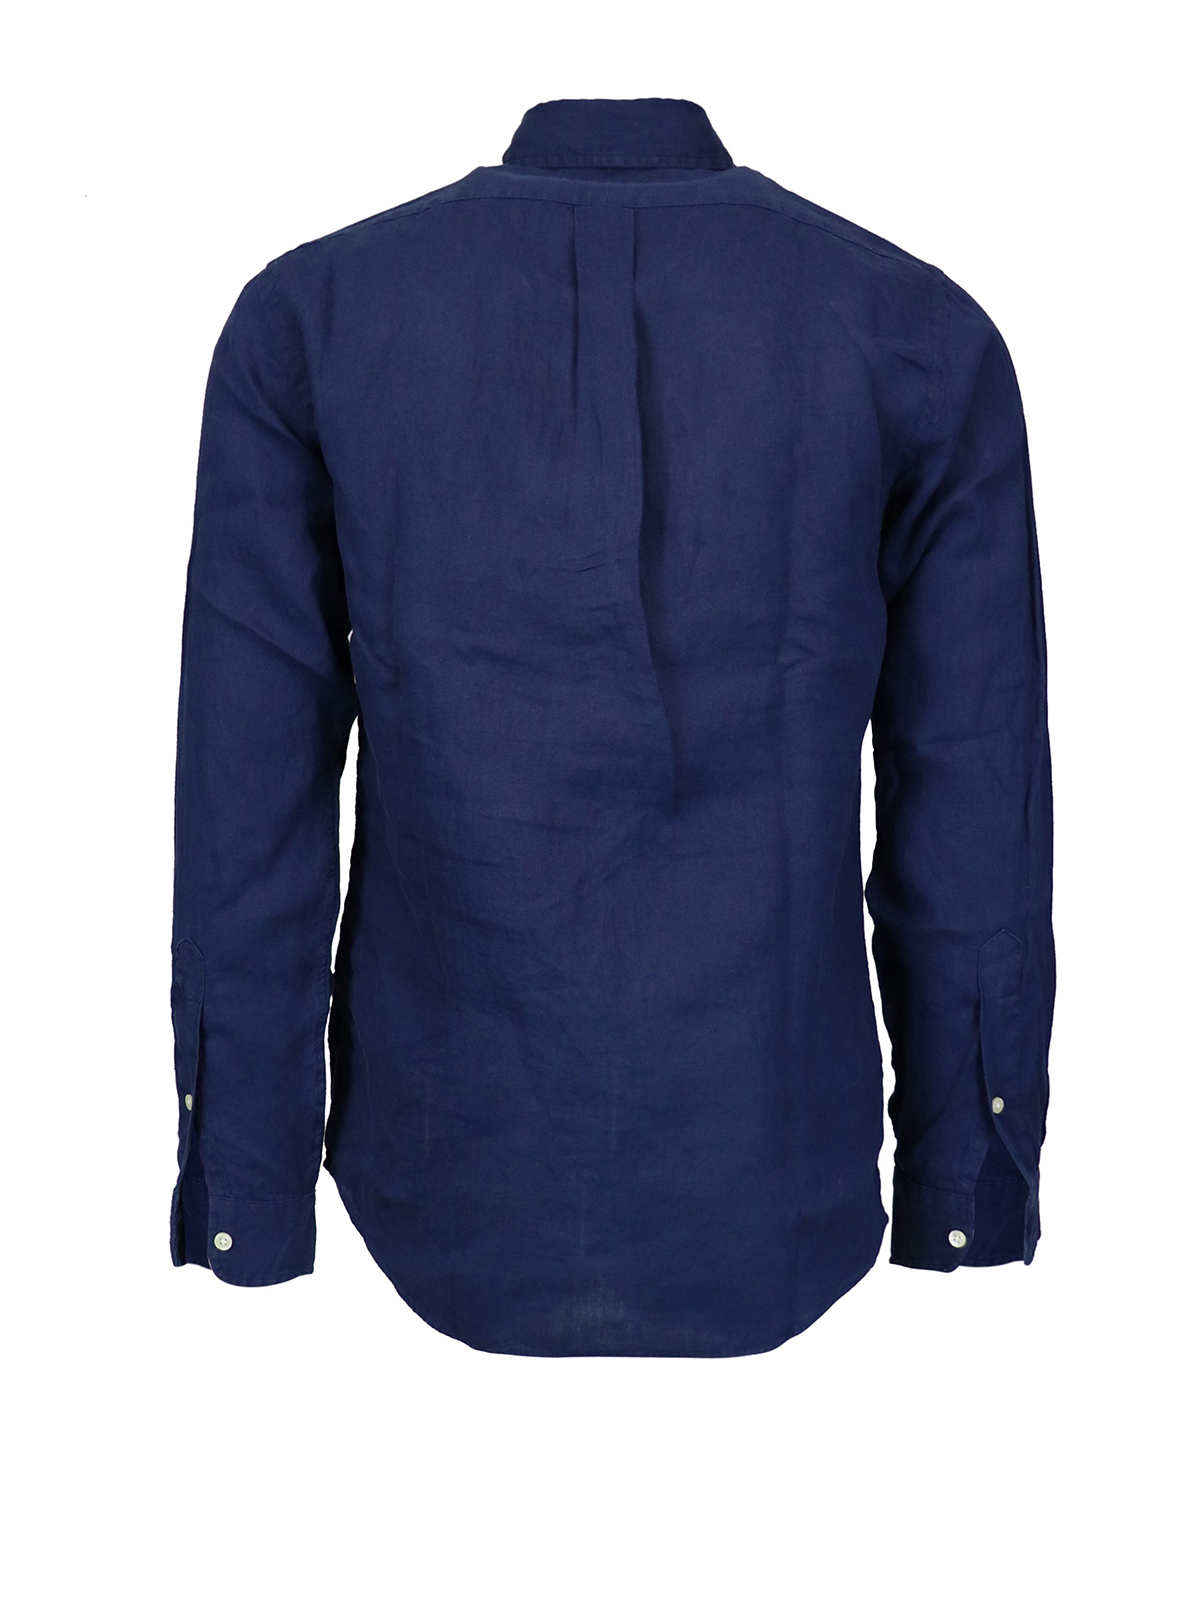 Shirts Polo Ralph Lauren - Navy linen shirt - 710794141002 | iKRIX.com